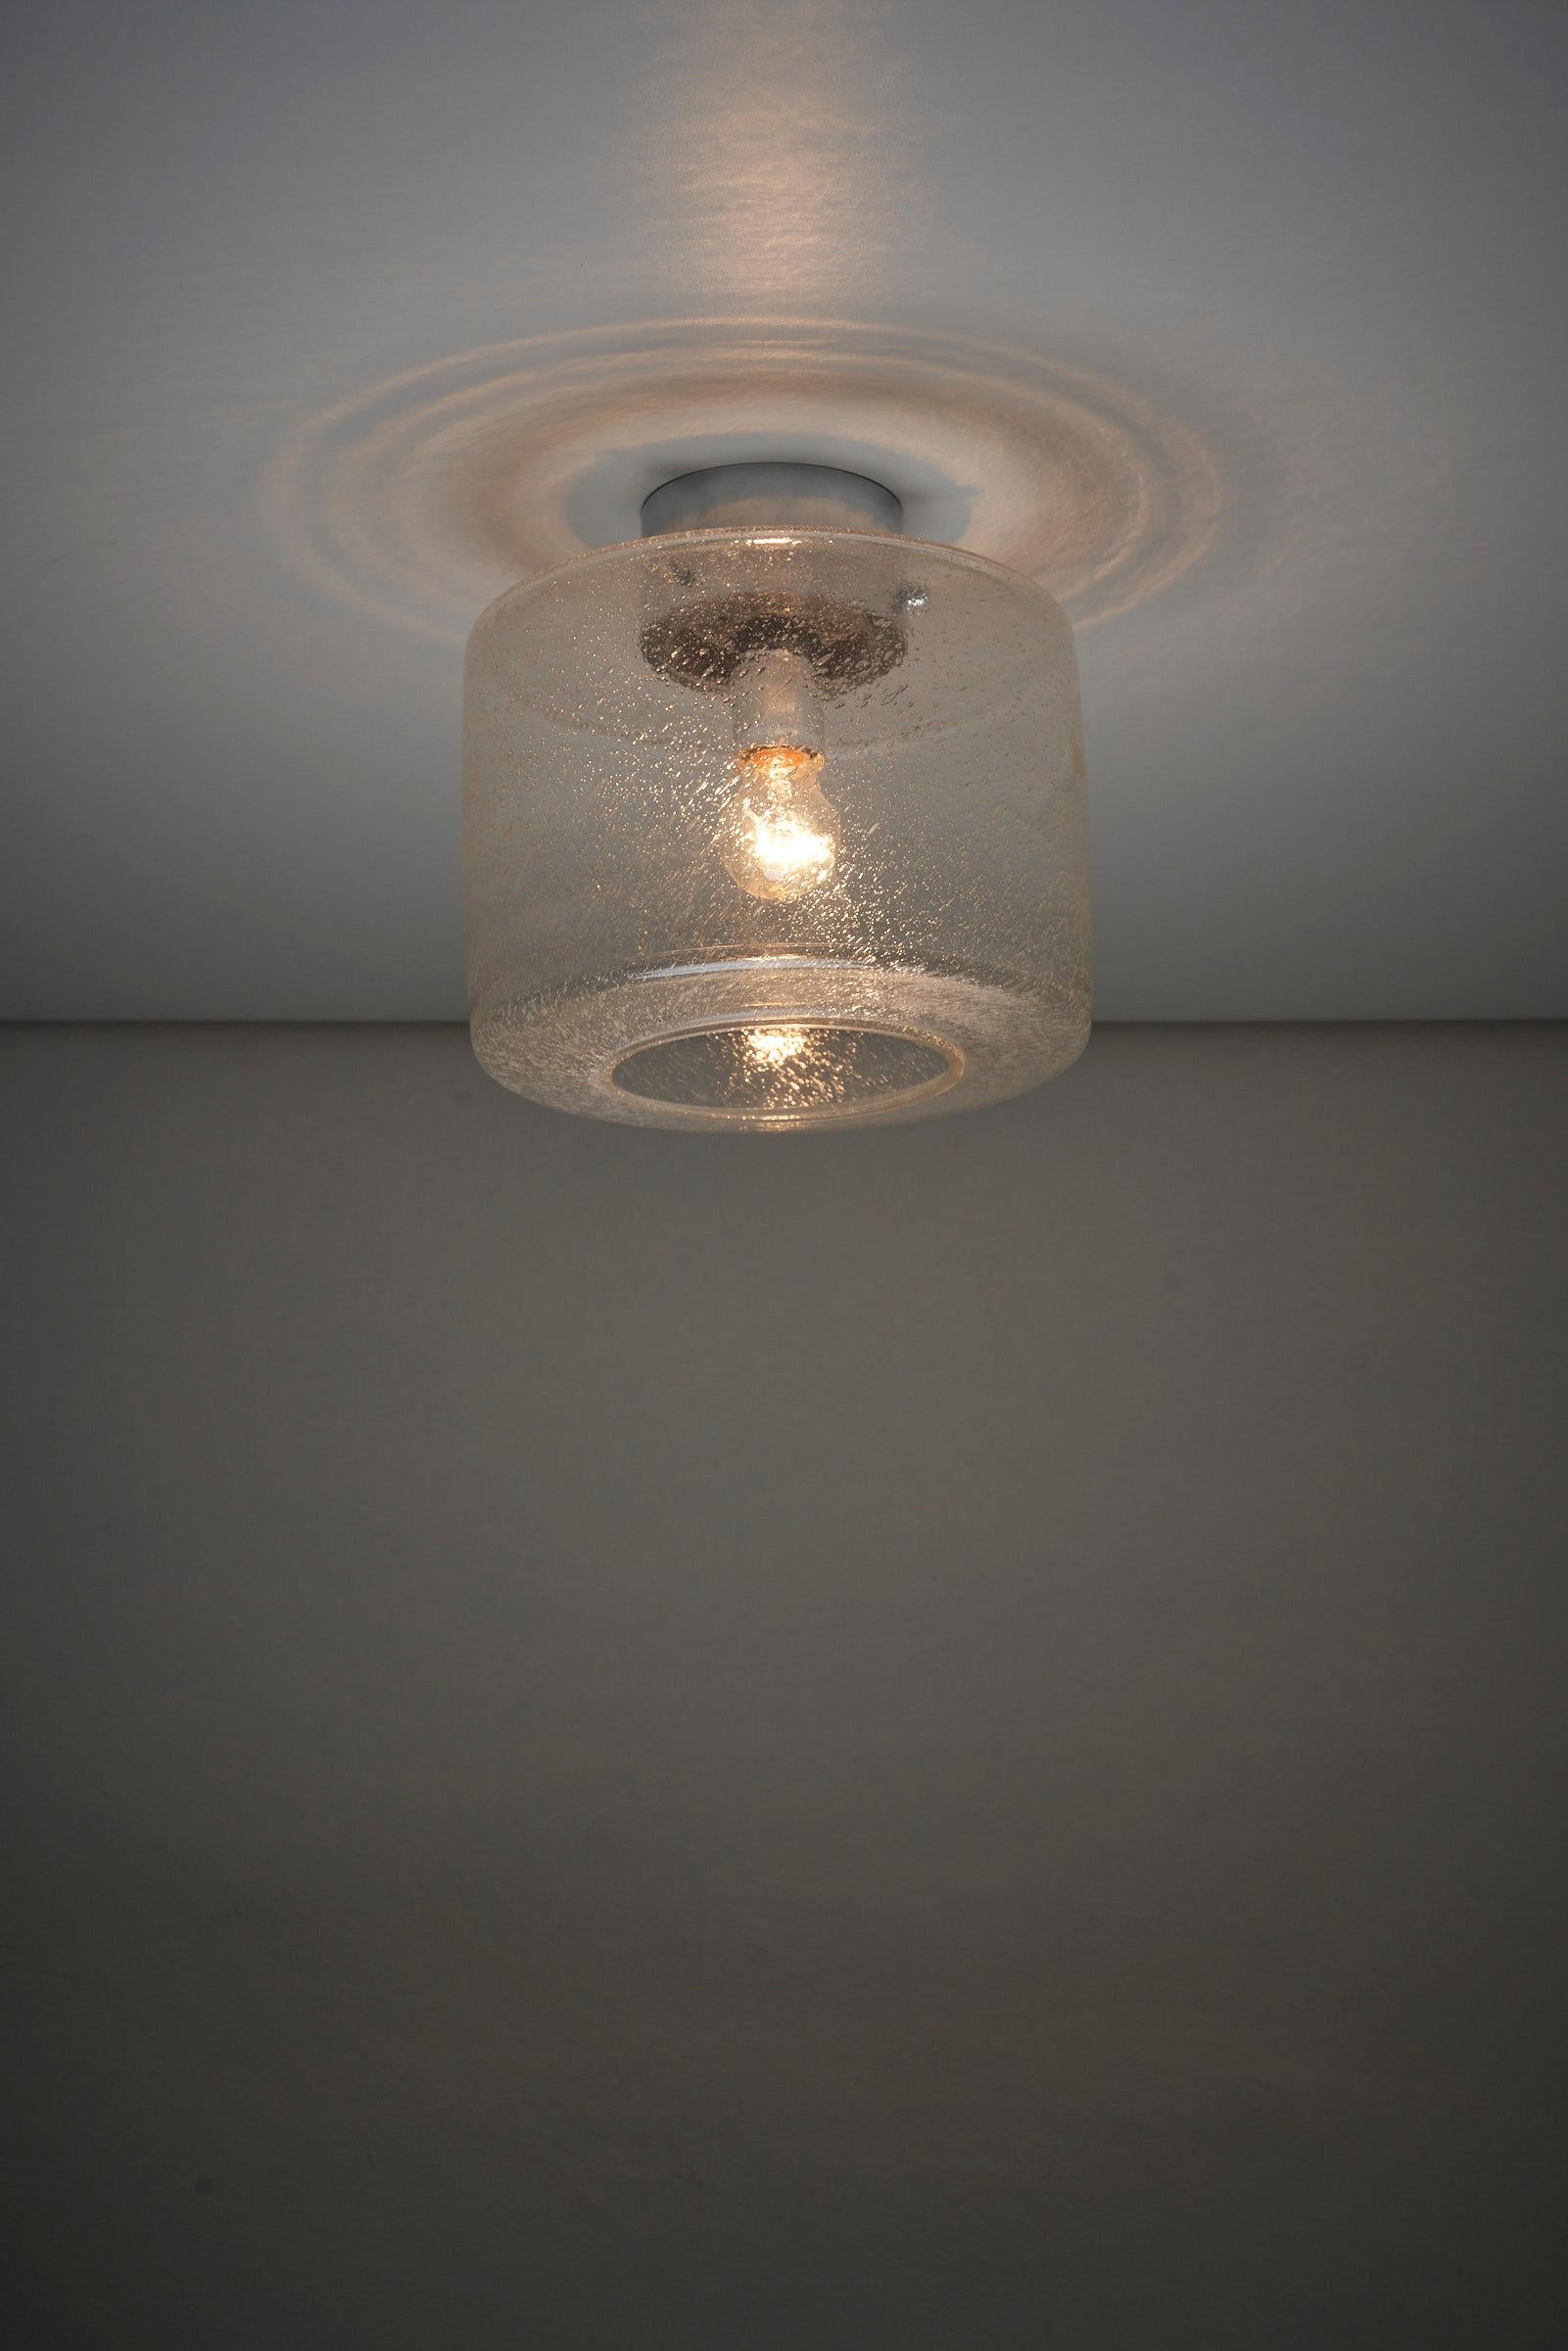 Plafonnier en verre Crystal Bubble de Glashütte Limburg. Ce support de plafond présente un verre texturé de forme cylindrique avec une ouverture en bas, solidement fixé par un système de montage chromé. La lampe conserve son étiquette d'origine à